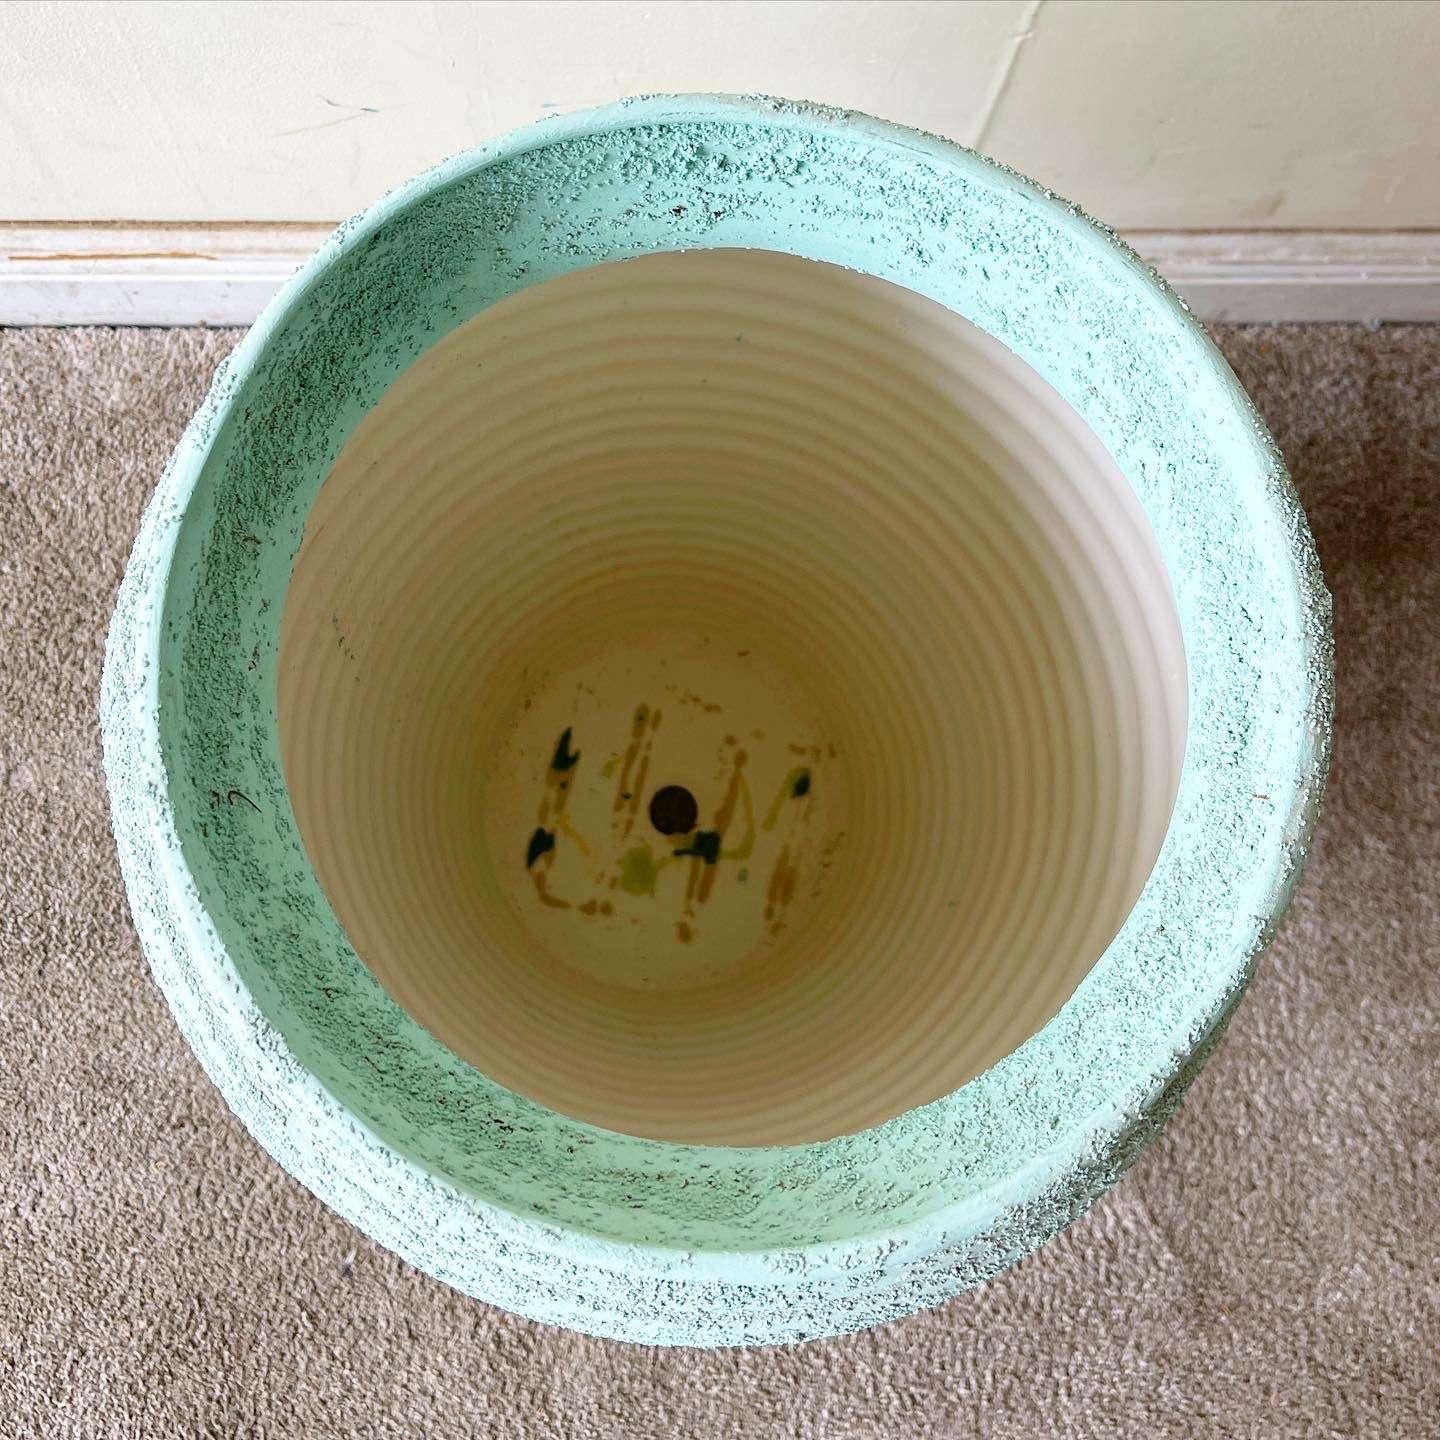 Außergewöhnliche postmoderne Bodenvase aus Keramik. Mit einer blau-grünen, strukturierten Oberfläche.
